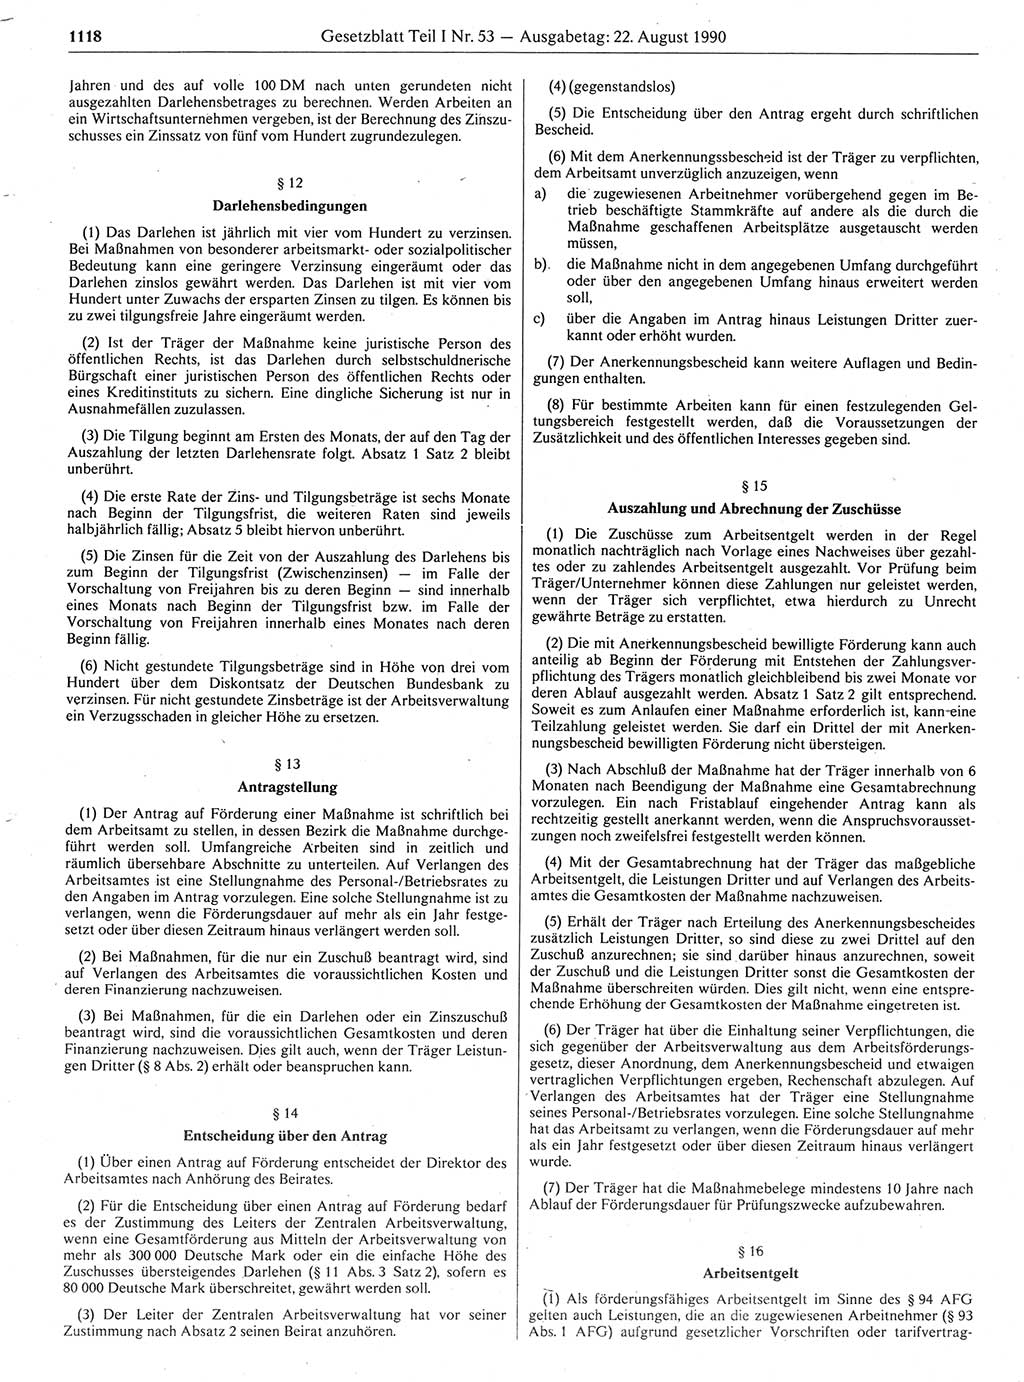 Gesetzblatt (GBl.) der Deutschen Demokratischen Republik (DDR) Teil Ⅰ 1990, Seite 1118 (GBl. DDR Ⅰ 1990, S. 1118)